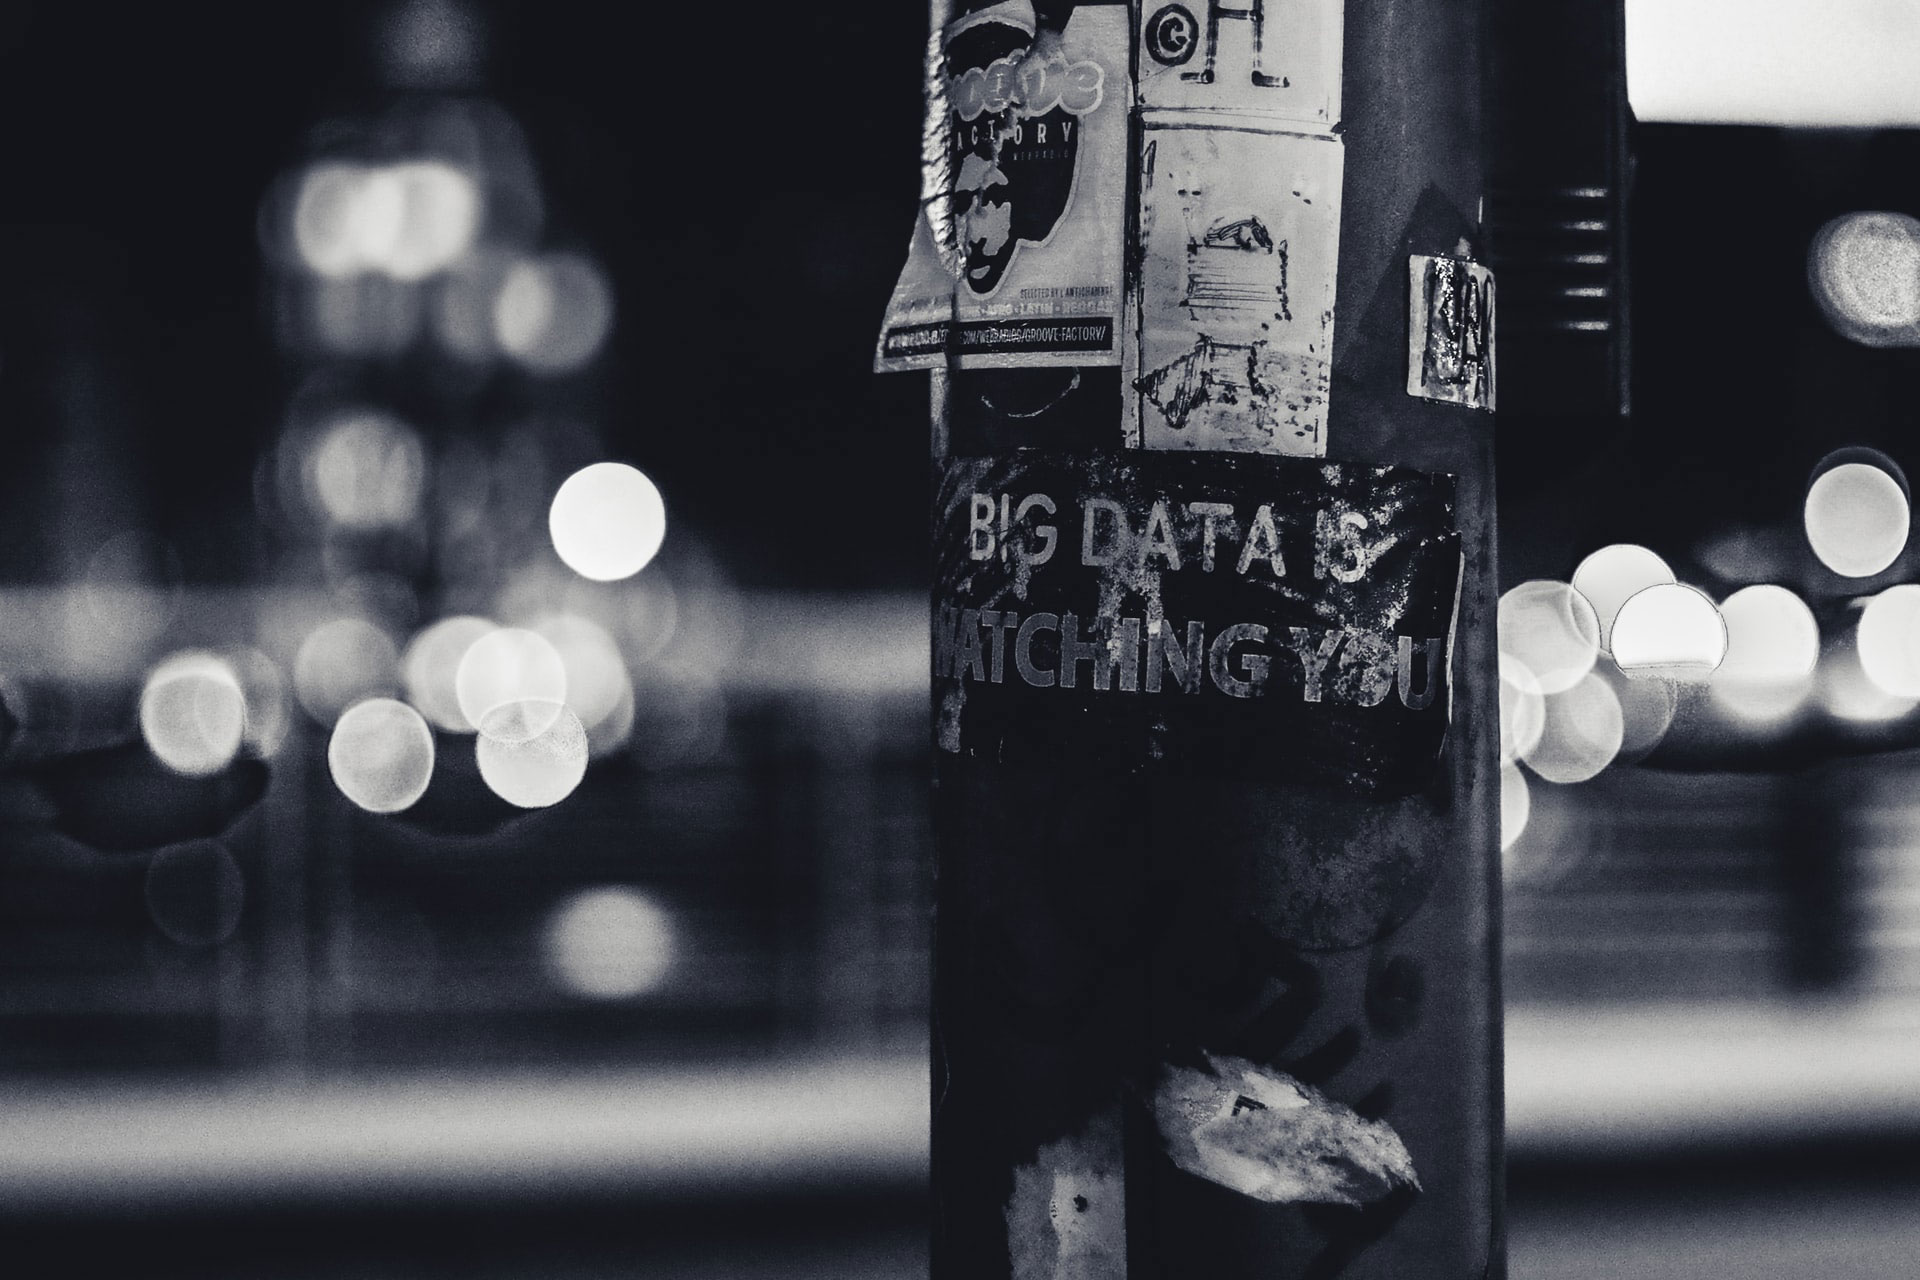 S/w-Foto eines Laternenpfahl auf dem neden einigen Aufklebern auch der Schriftzug "big data is watching you" steht © ev auf unsplash.com